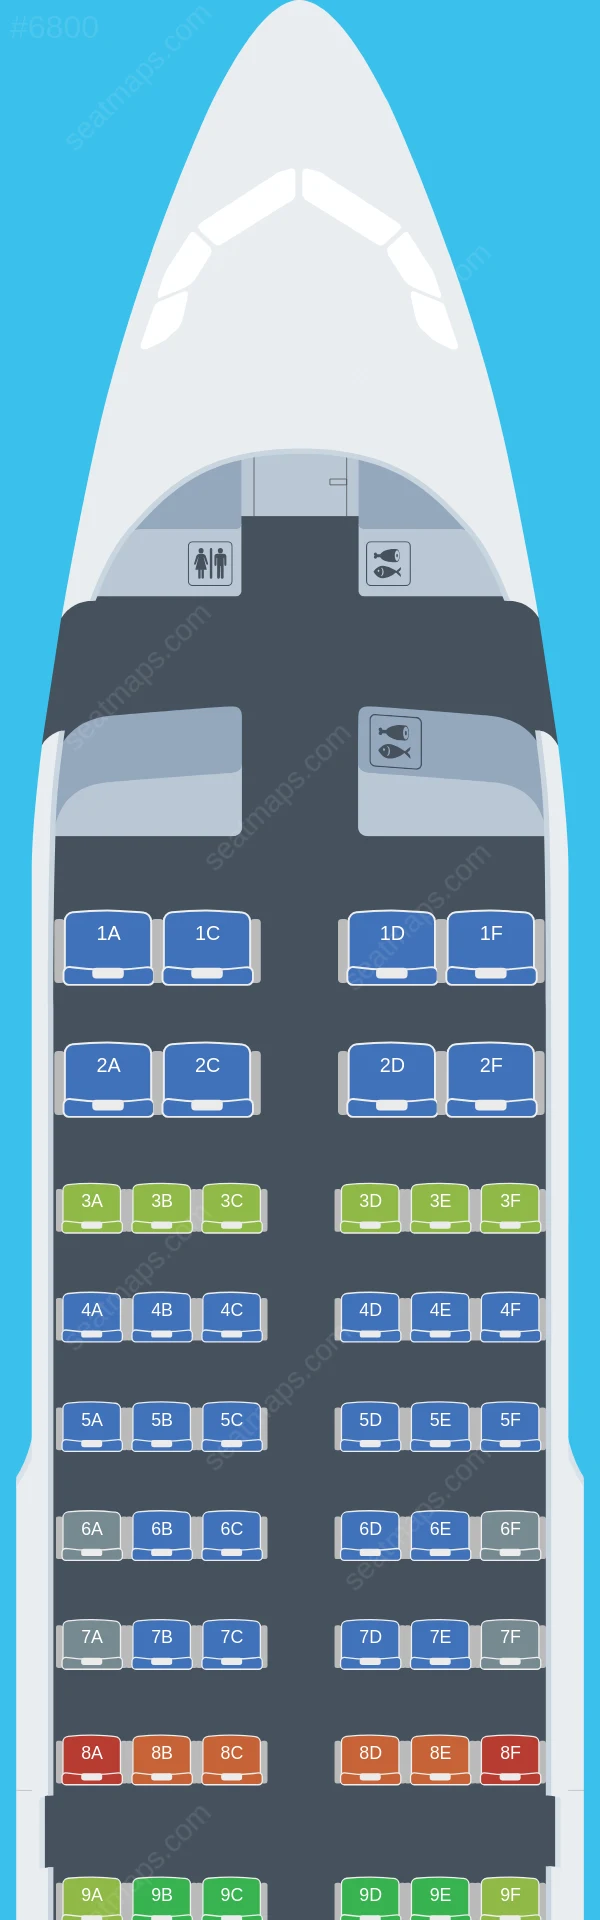 Aurora Airbus A319-100 seatmap preview